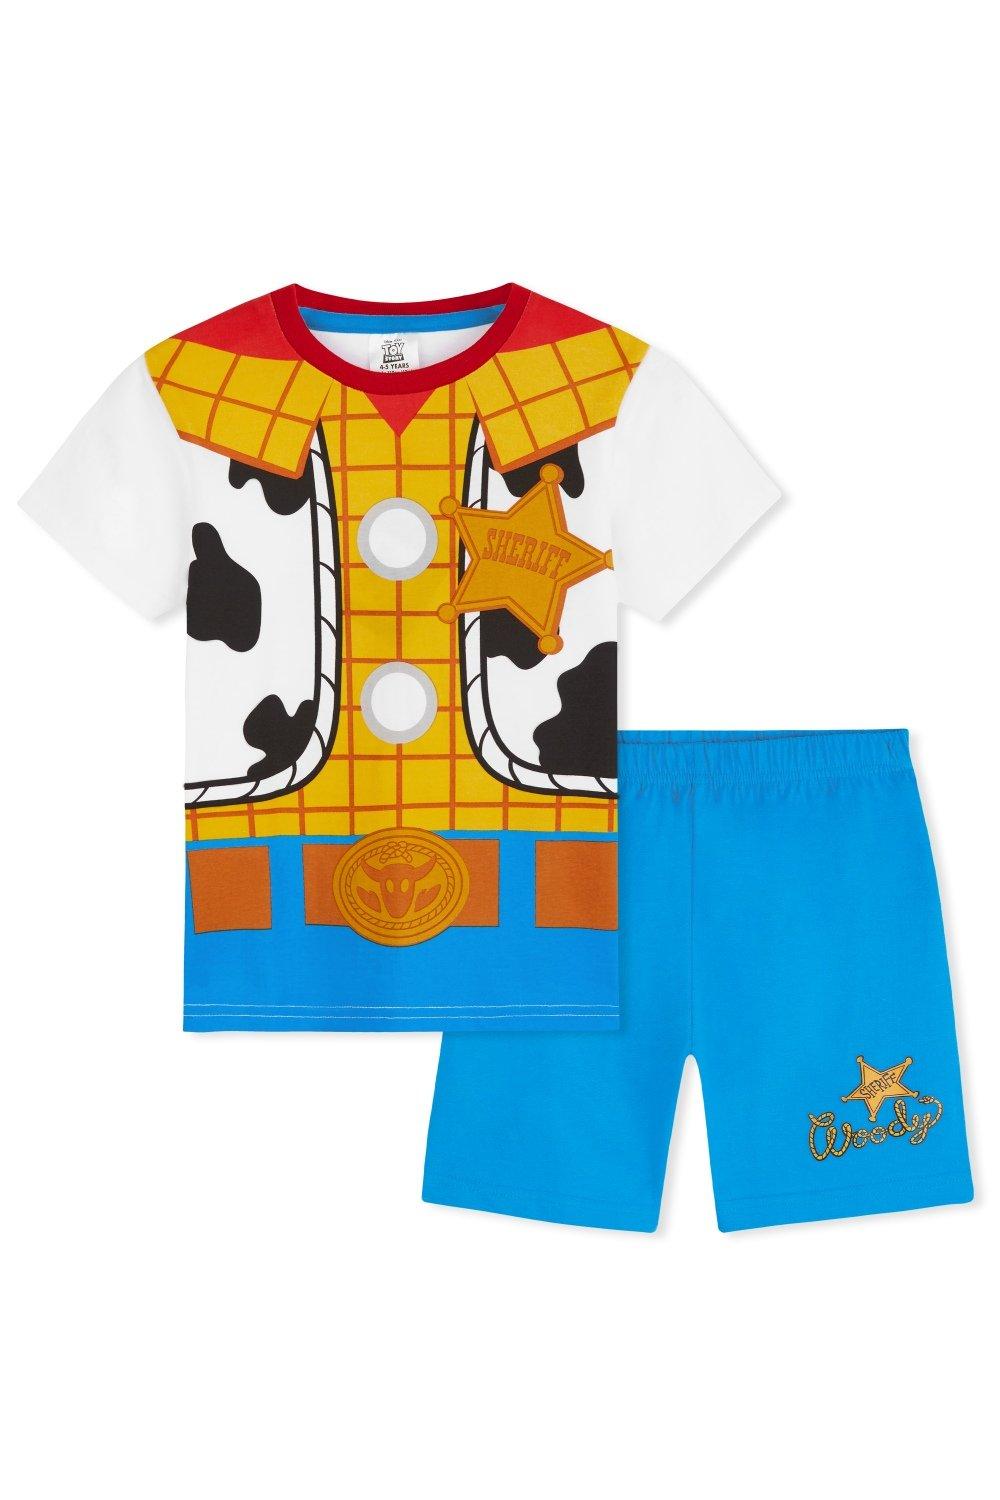 Toy Story Pyjama Set Short Sleeve